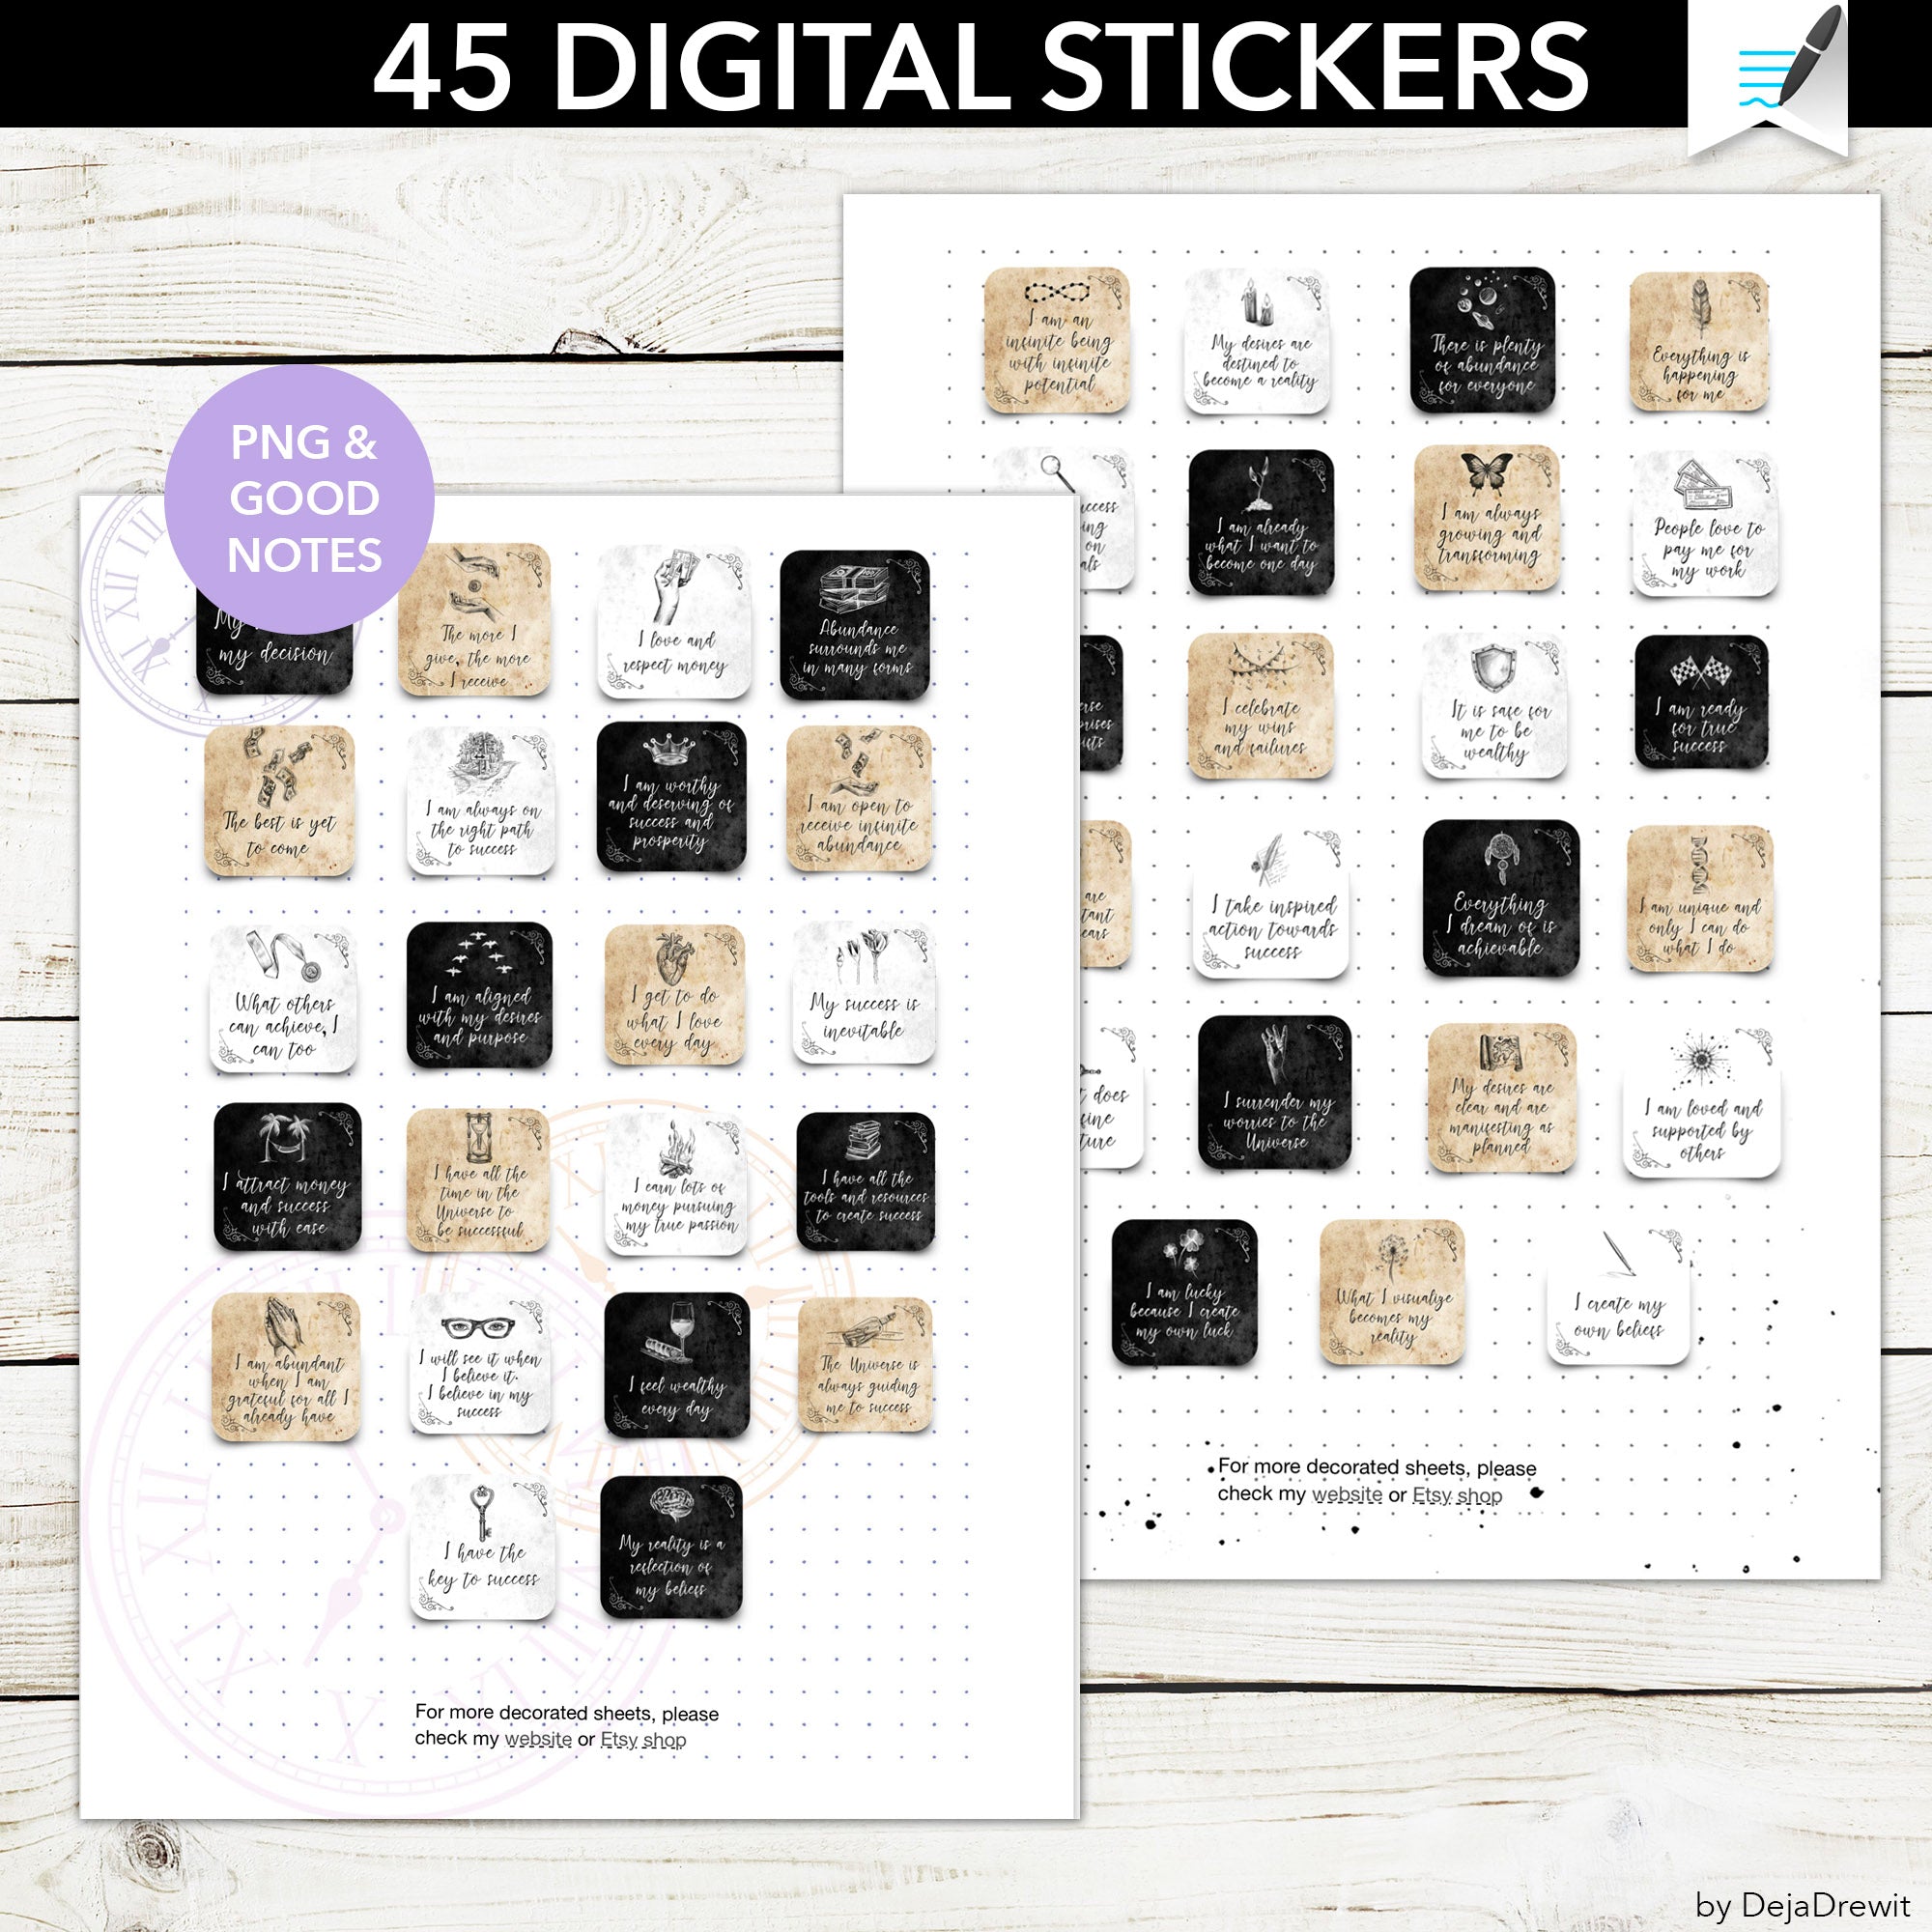 Positive Affirmations for Success Sticker Sheet – Splendiddesignsstore